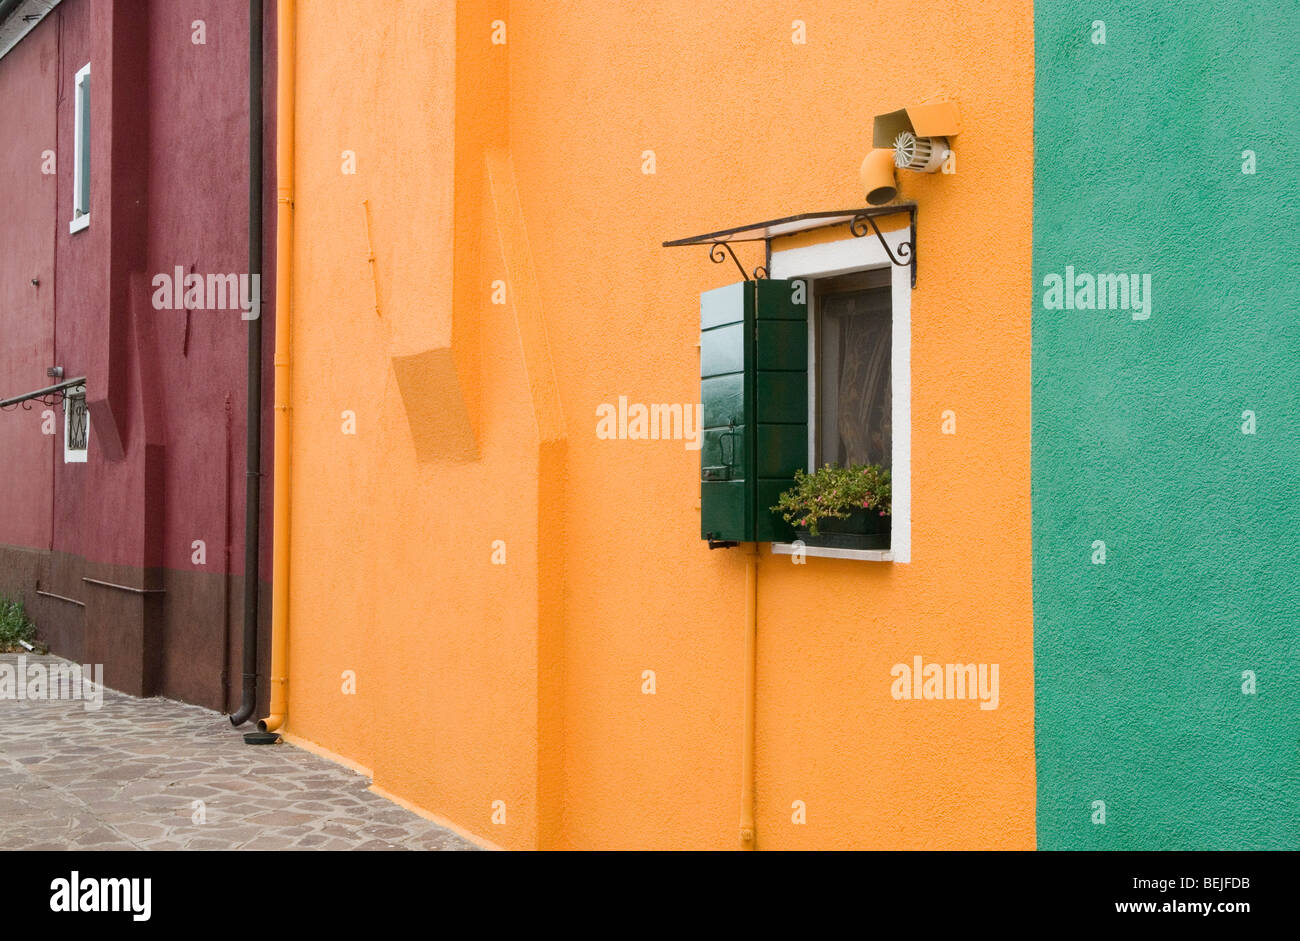 Burano Venezia Italia. Case colorate sull'isola di Burano. 2009 2000 HOMER SYKES Foto Stock